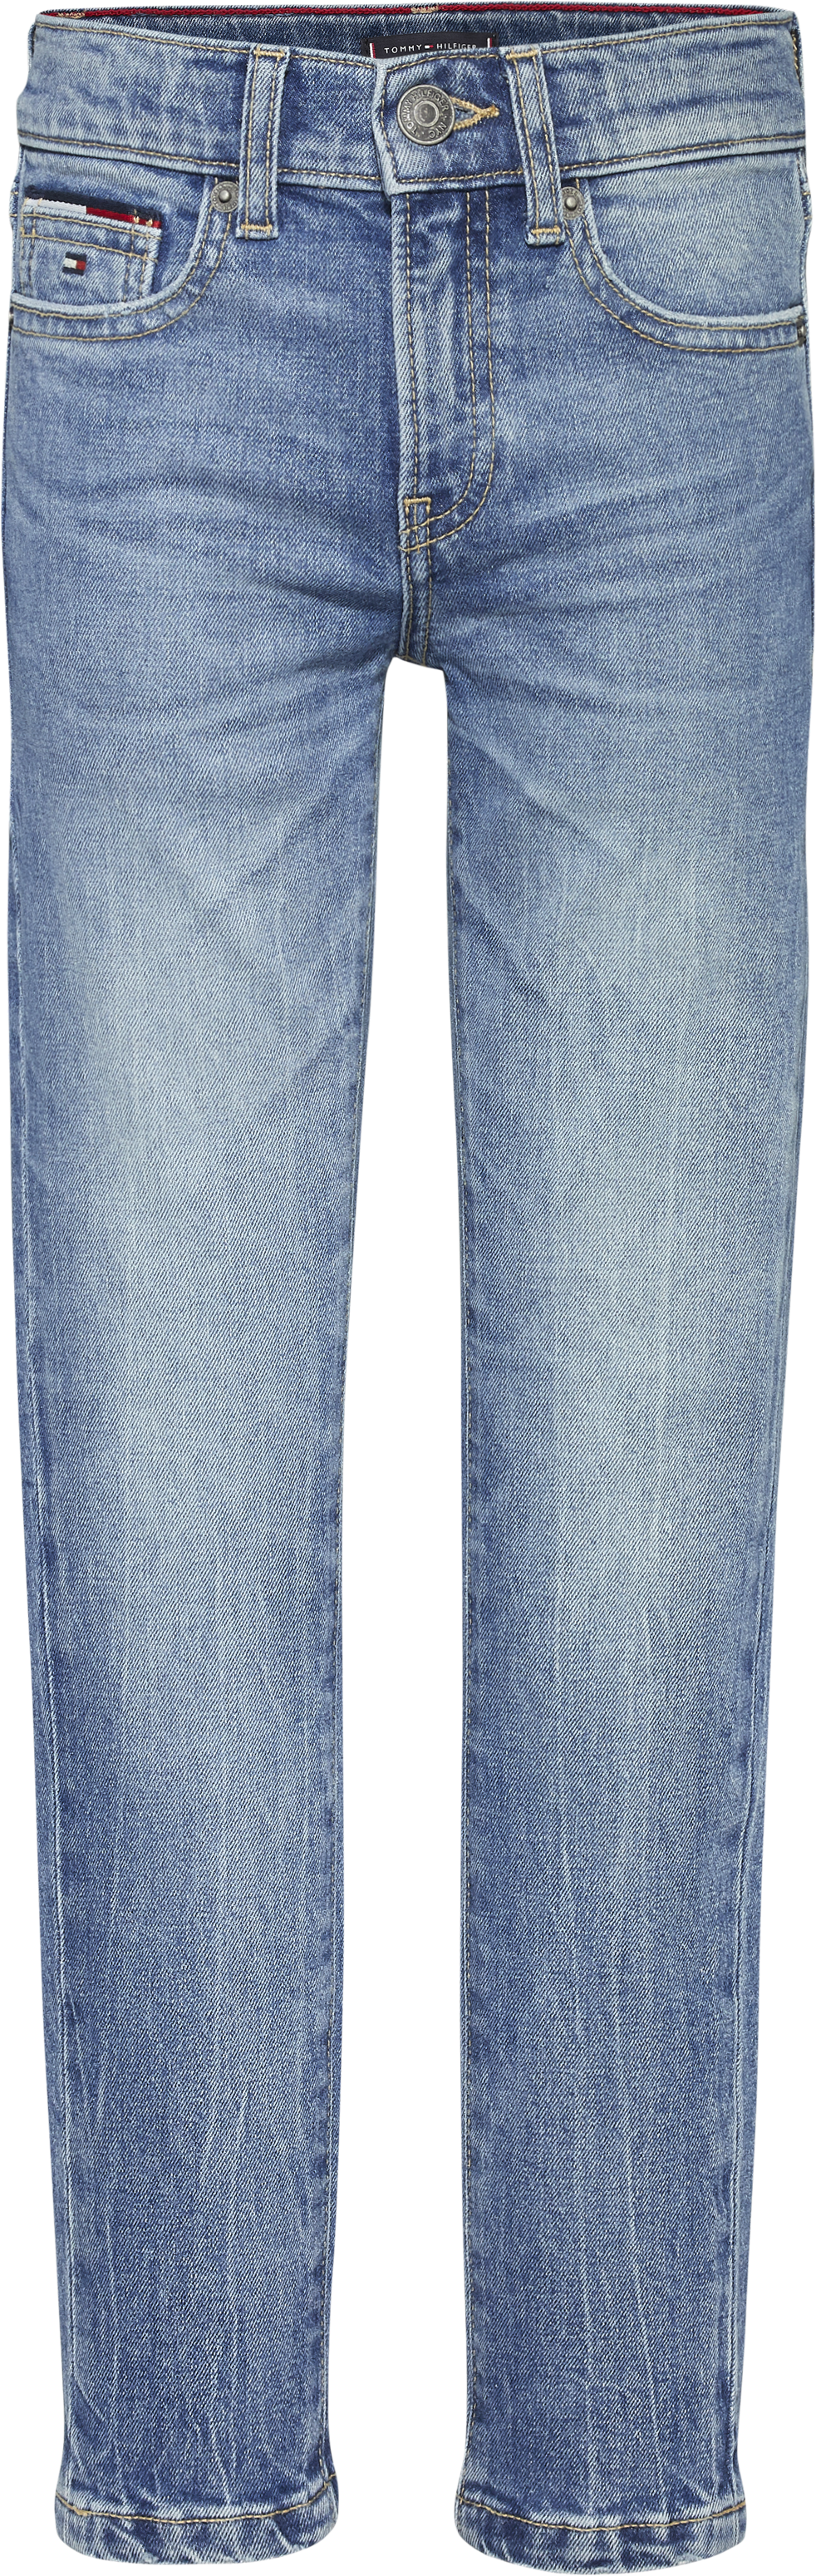 Tommy Hilfiger Jeans SPENCER SLIM TAPERED 1BC